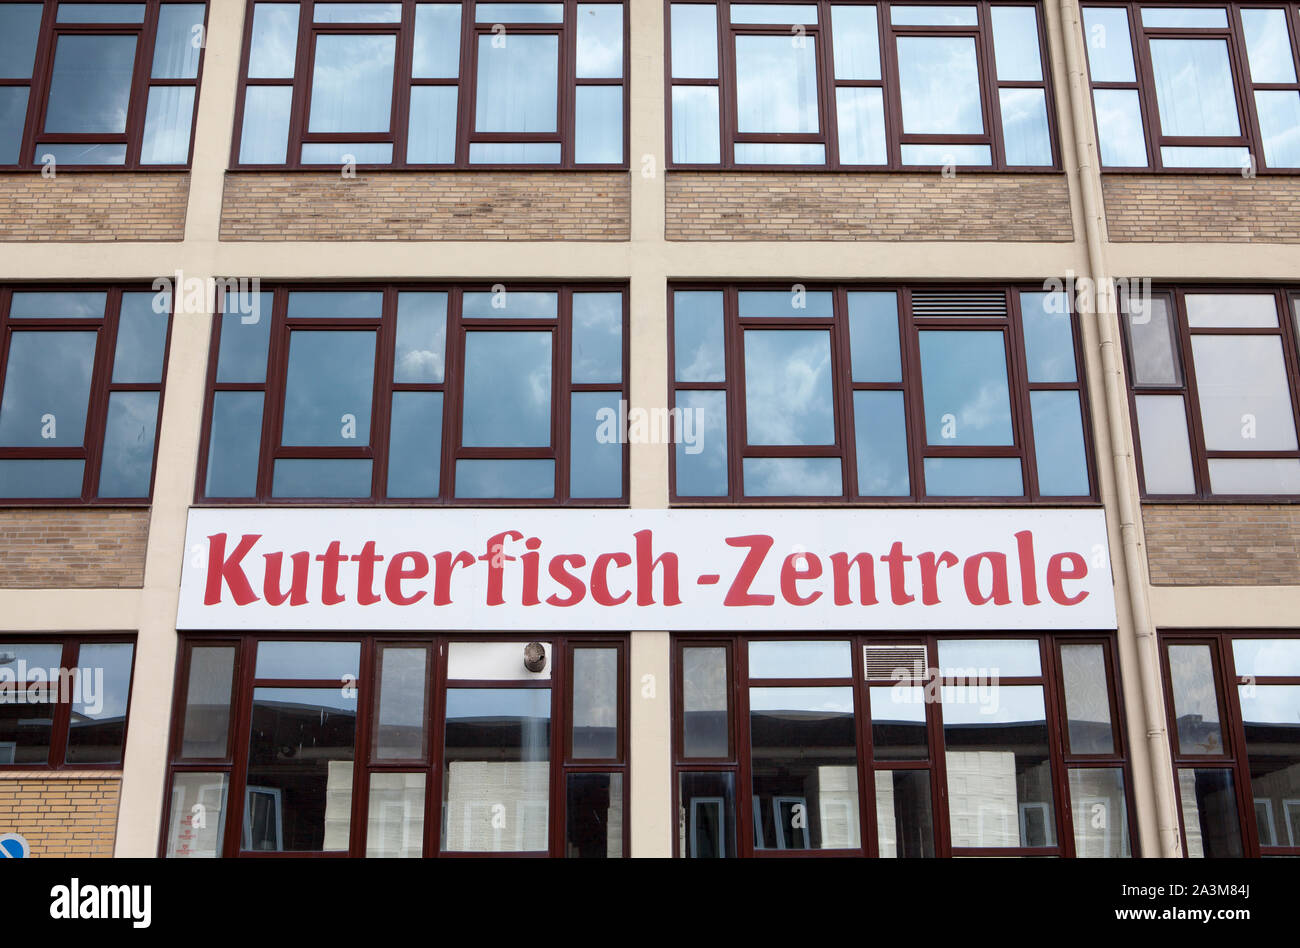 Kutterfisch, société de pêche, le vieux port, Cuxhaven, Basse-Saxe, Allemagne, Europe Banque D'Images